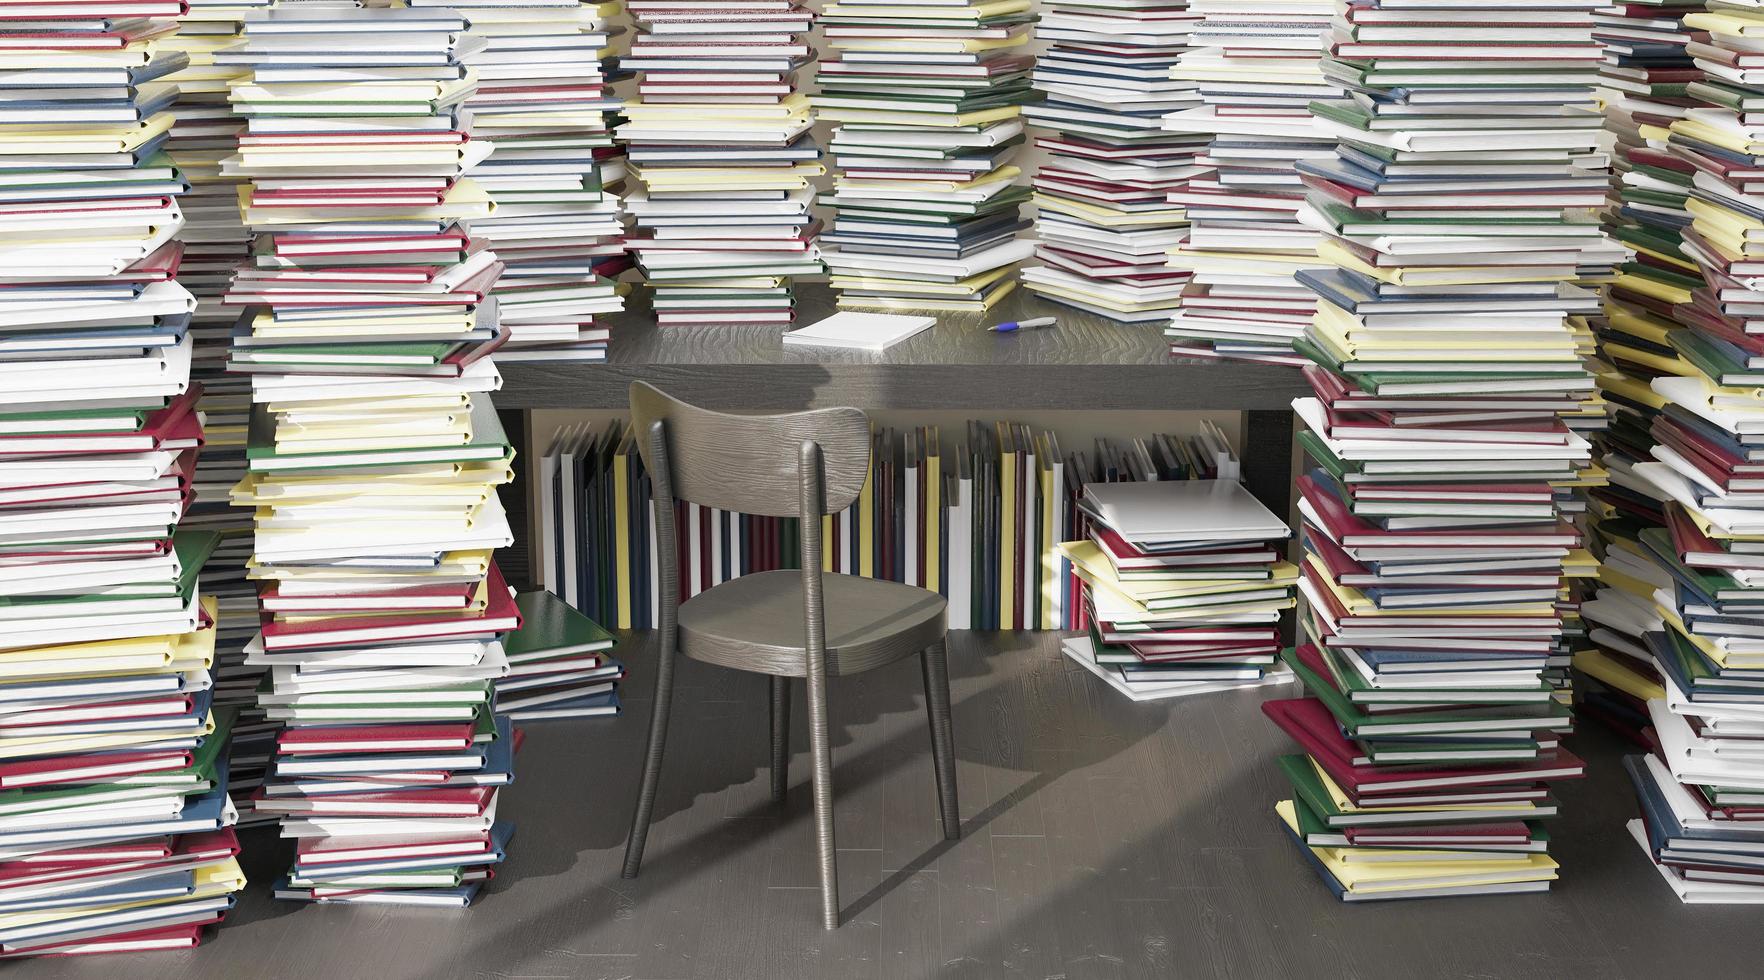 mesa cercada por muitos livros empilhados ao redor foto